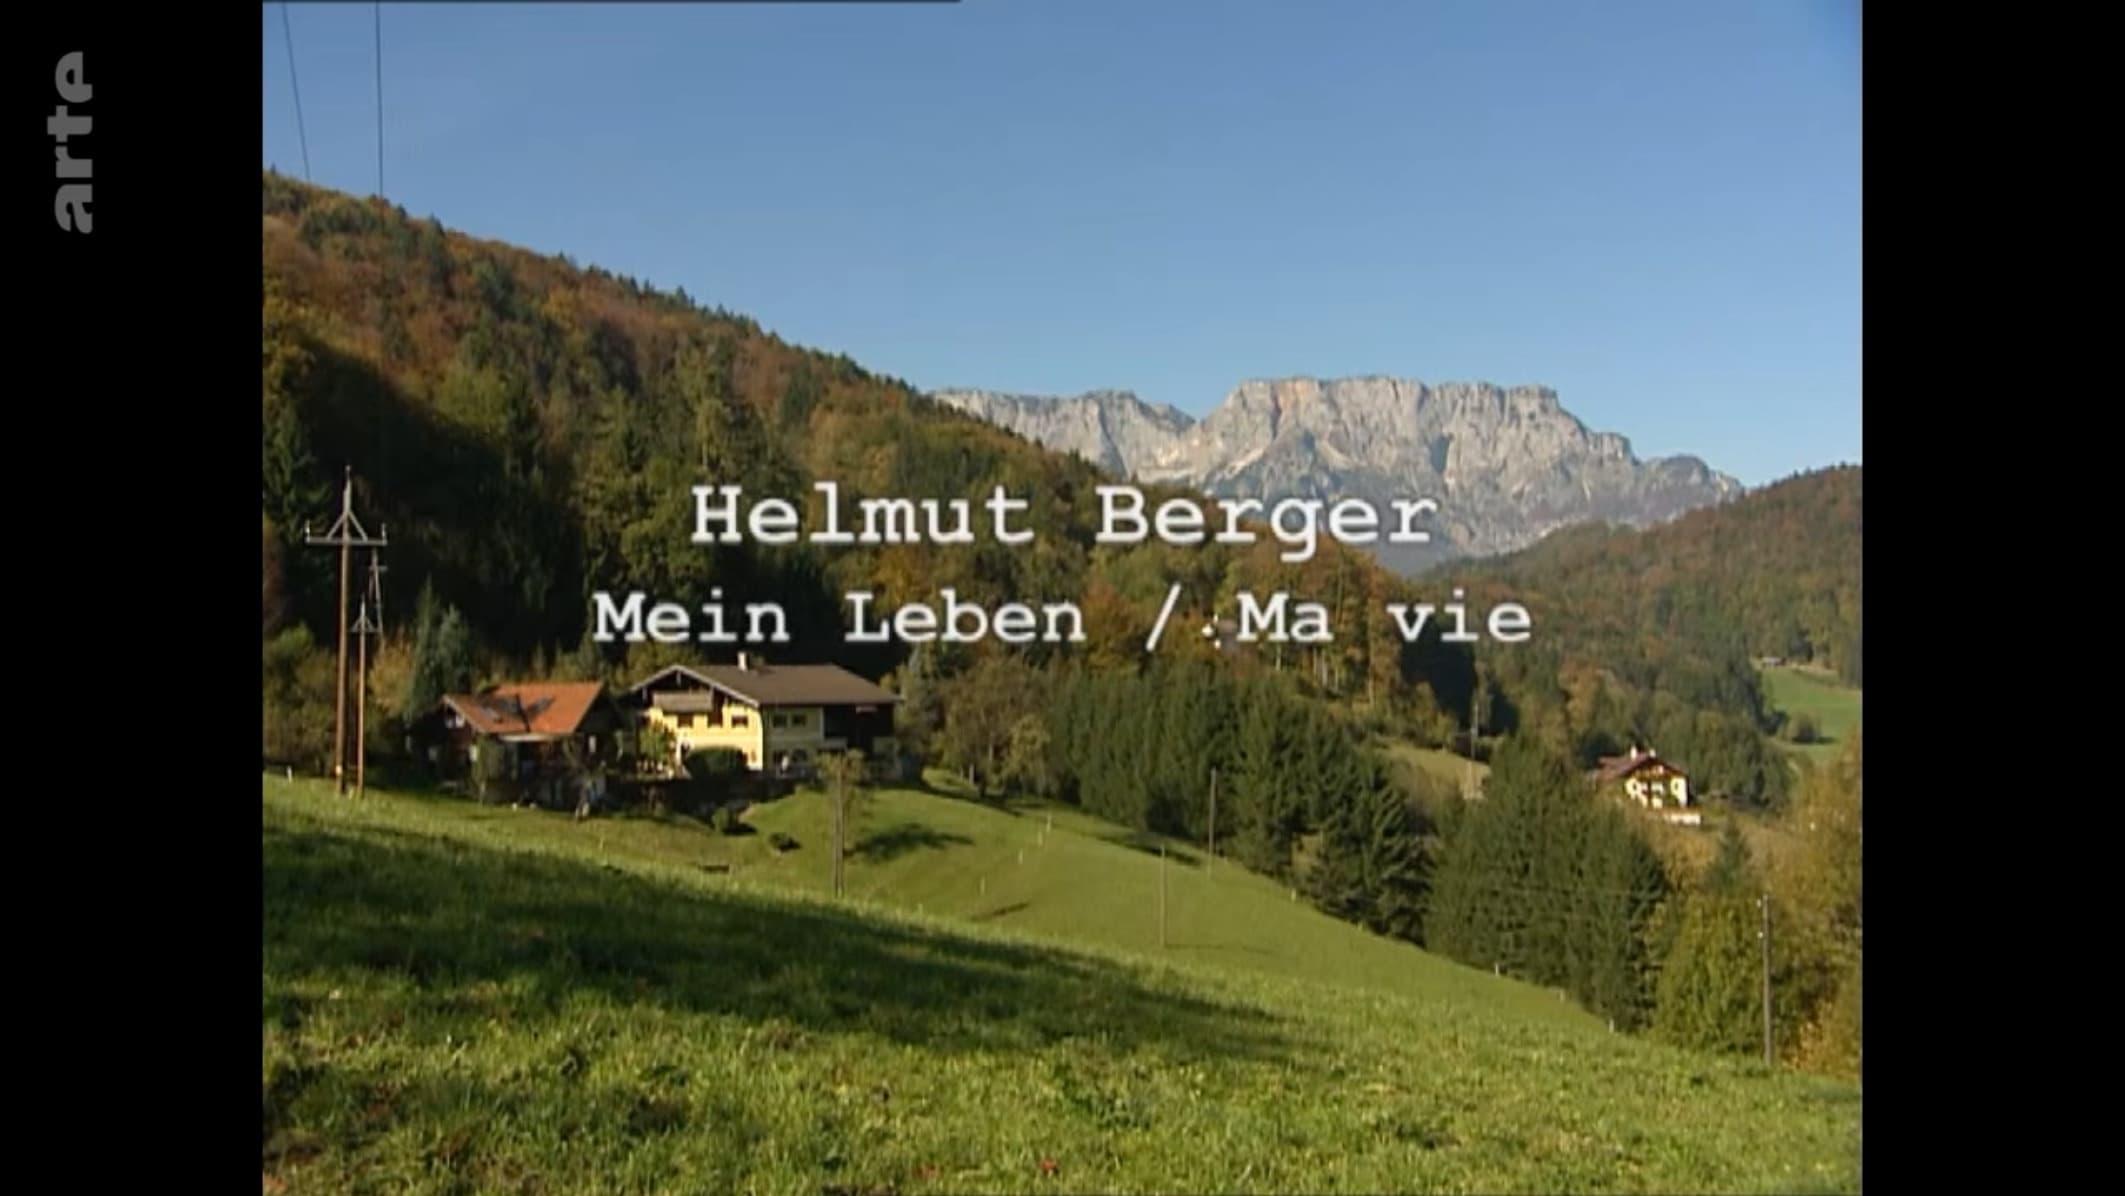 Helmut Berger - Mein Leben backdrop